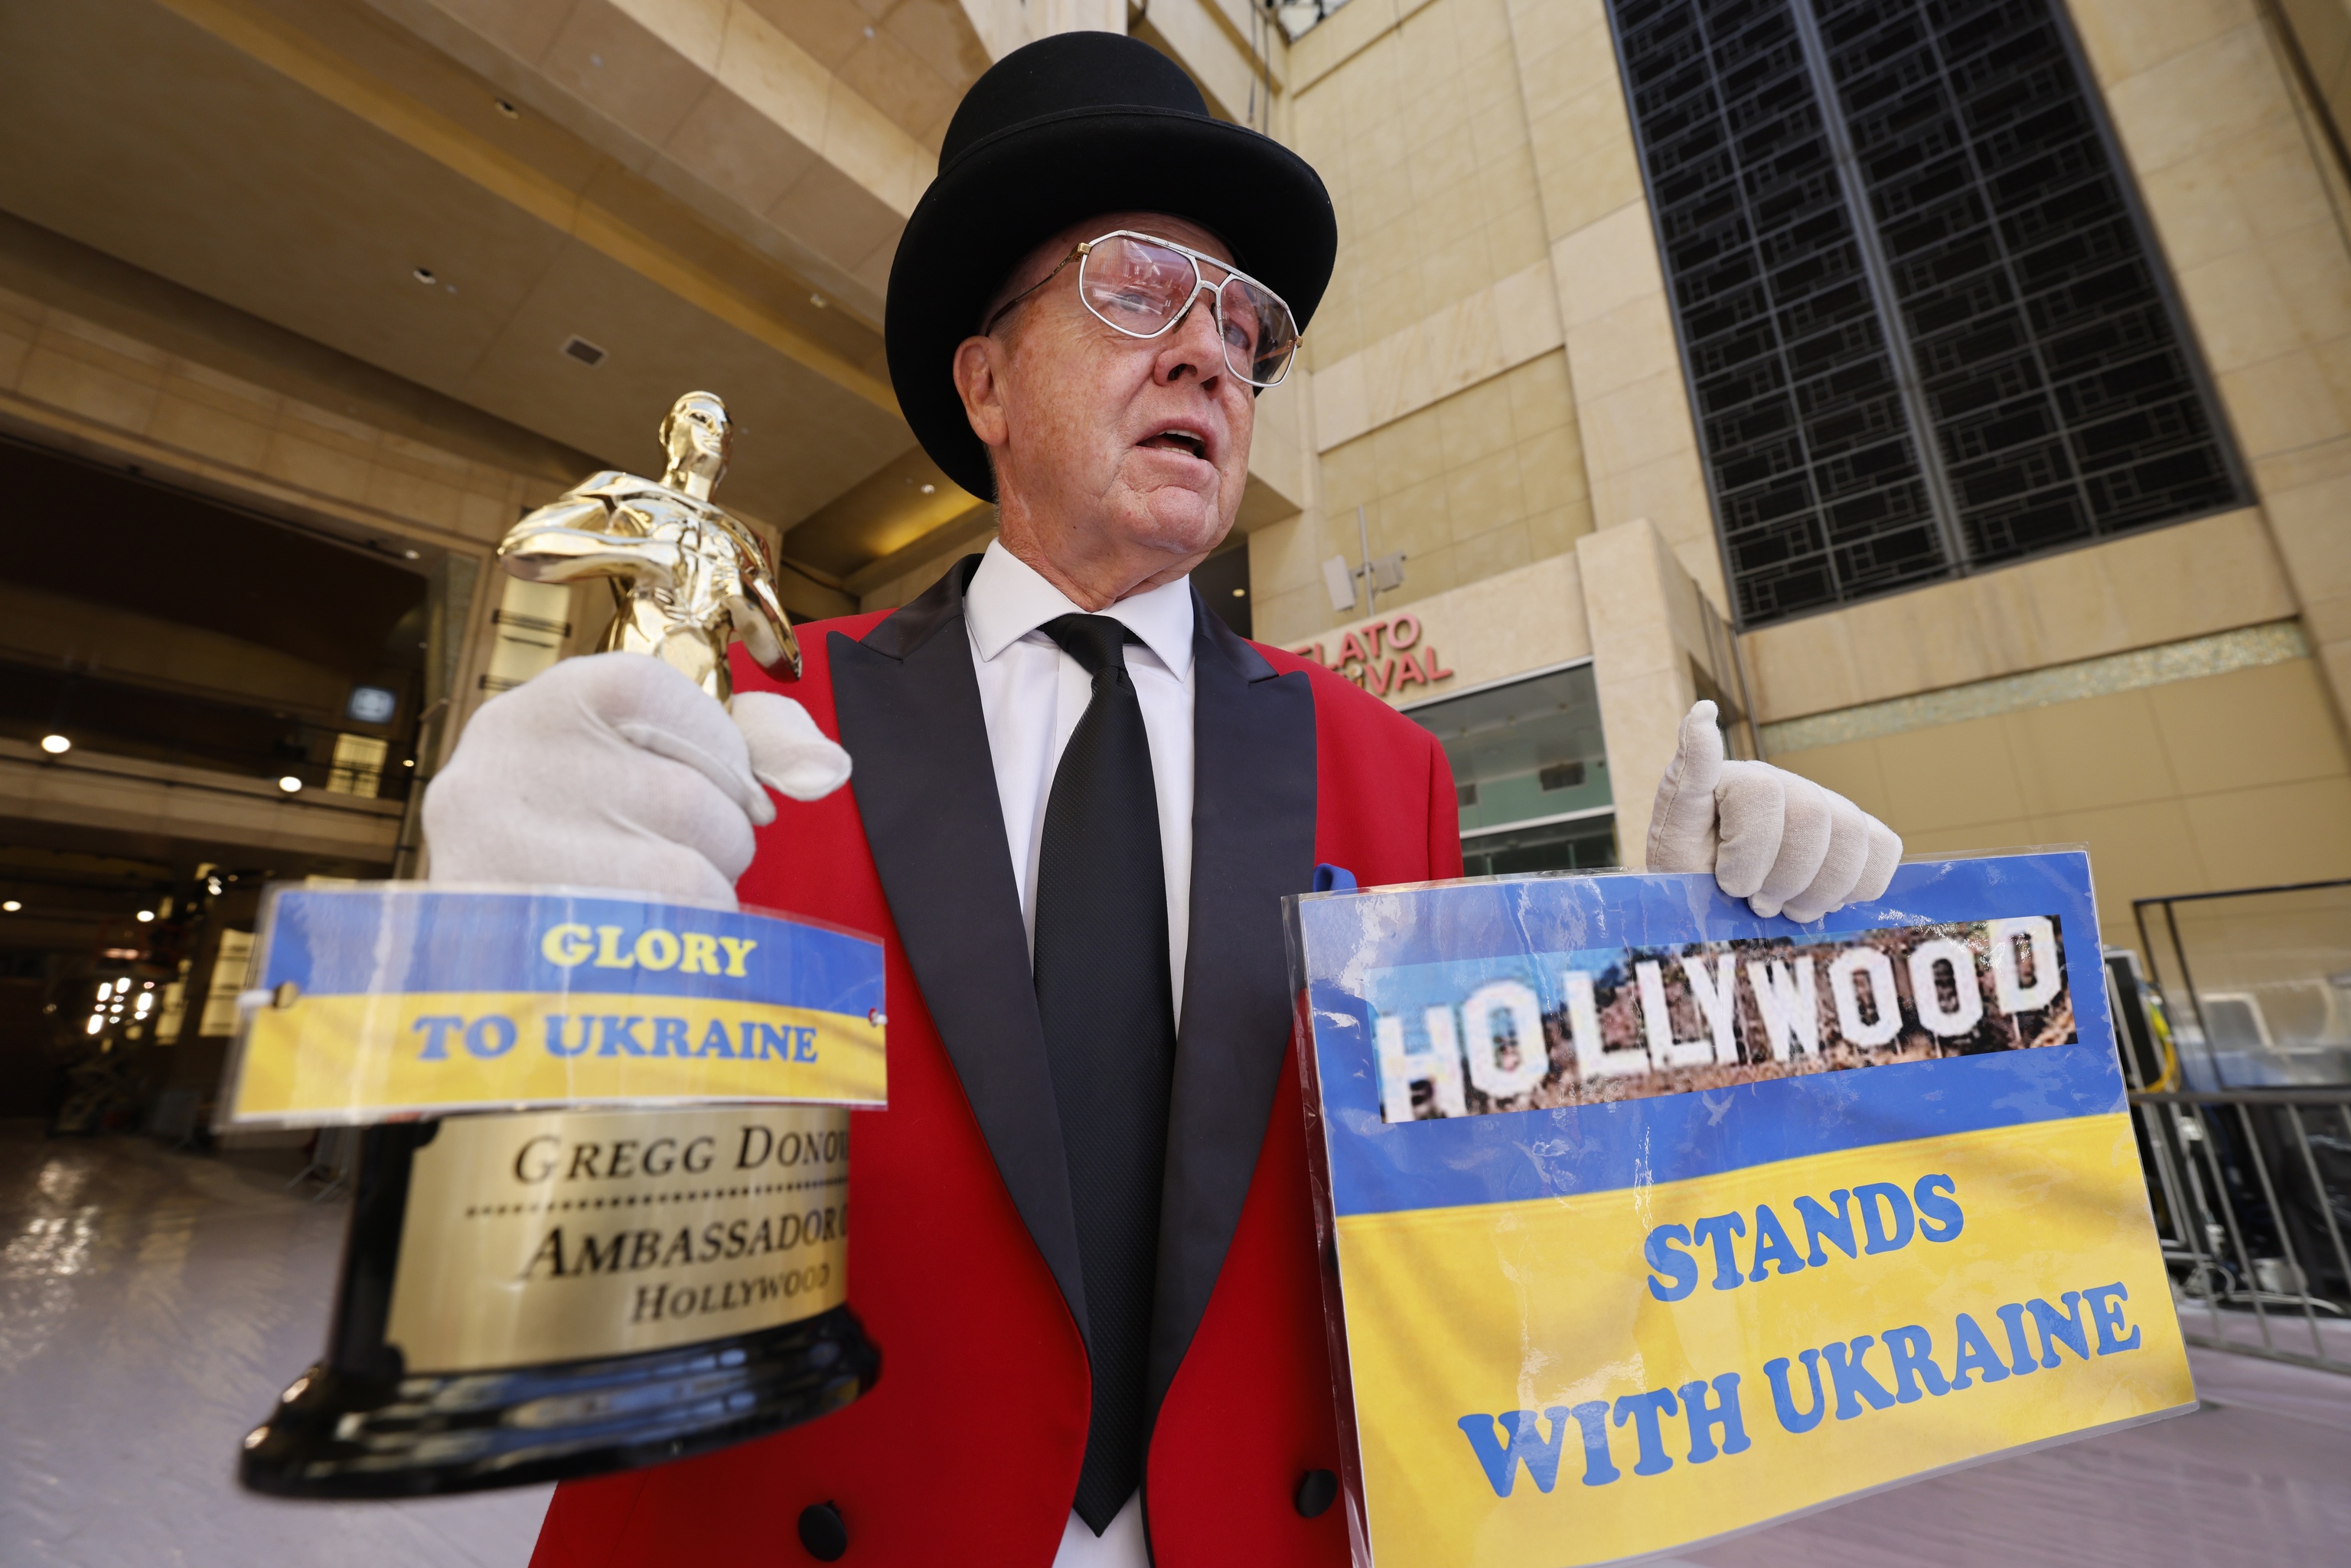 Gregg Donovan sostiene una rplica de un Oscar con un mensaje de apoyo a Ucrania.